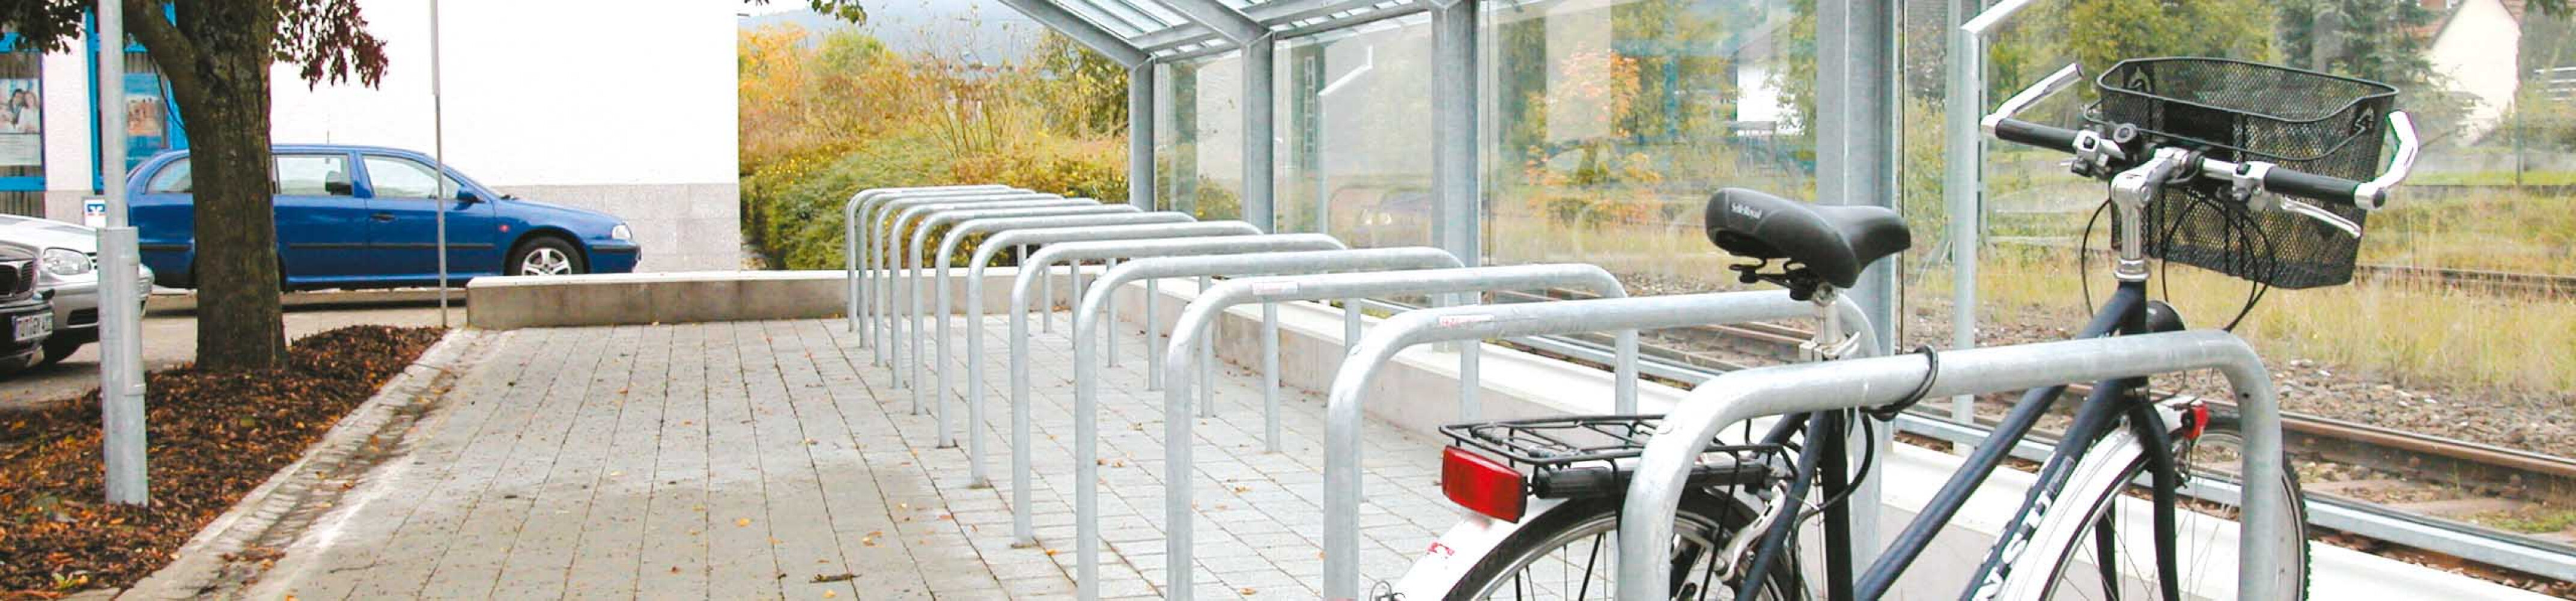 fahrradständer-am-bahnhof-sicher-abstellen-fahrradparksystem